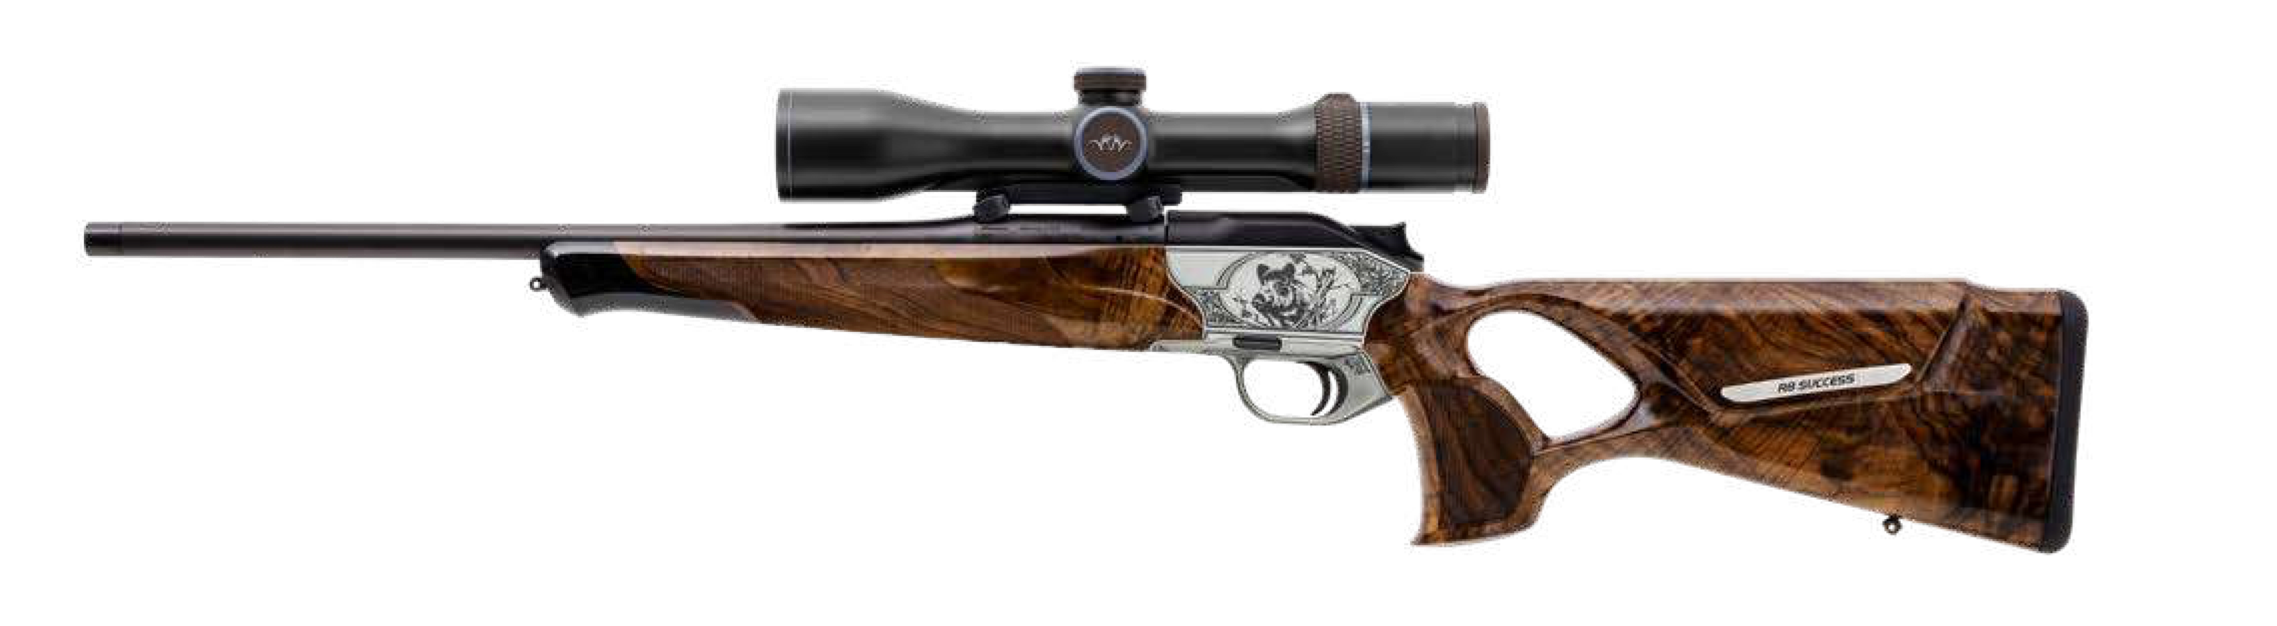 Rifle R8 Success Luxus